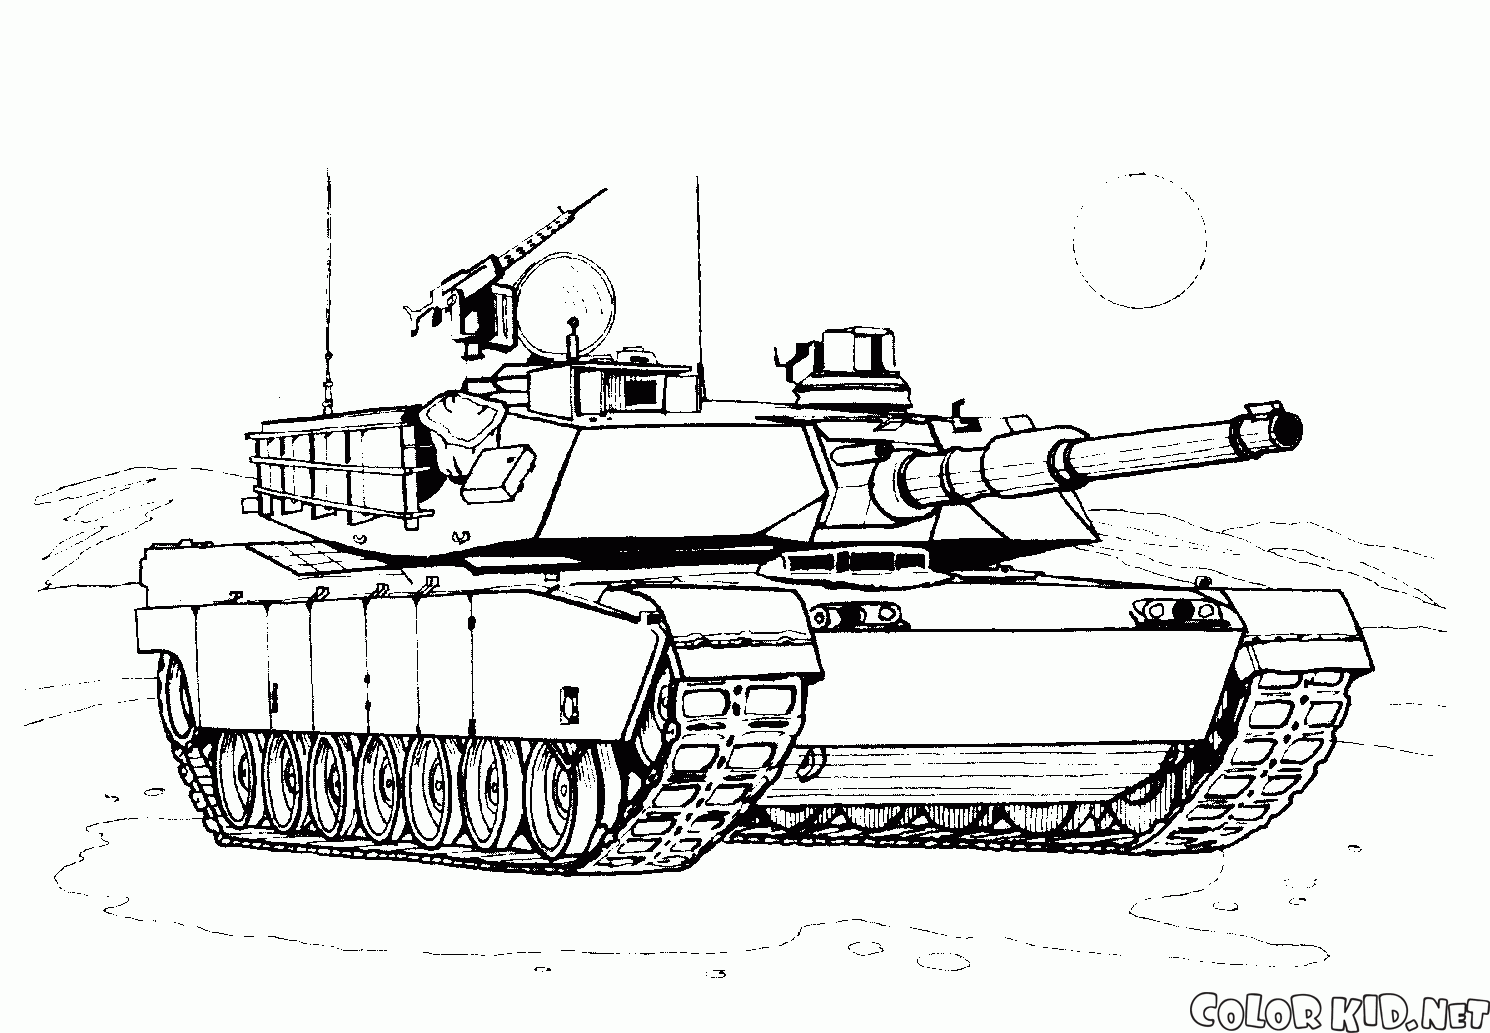 Beşinci nesil tankı